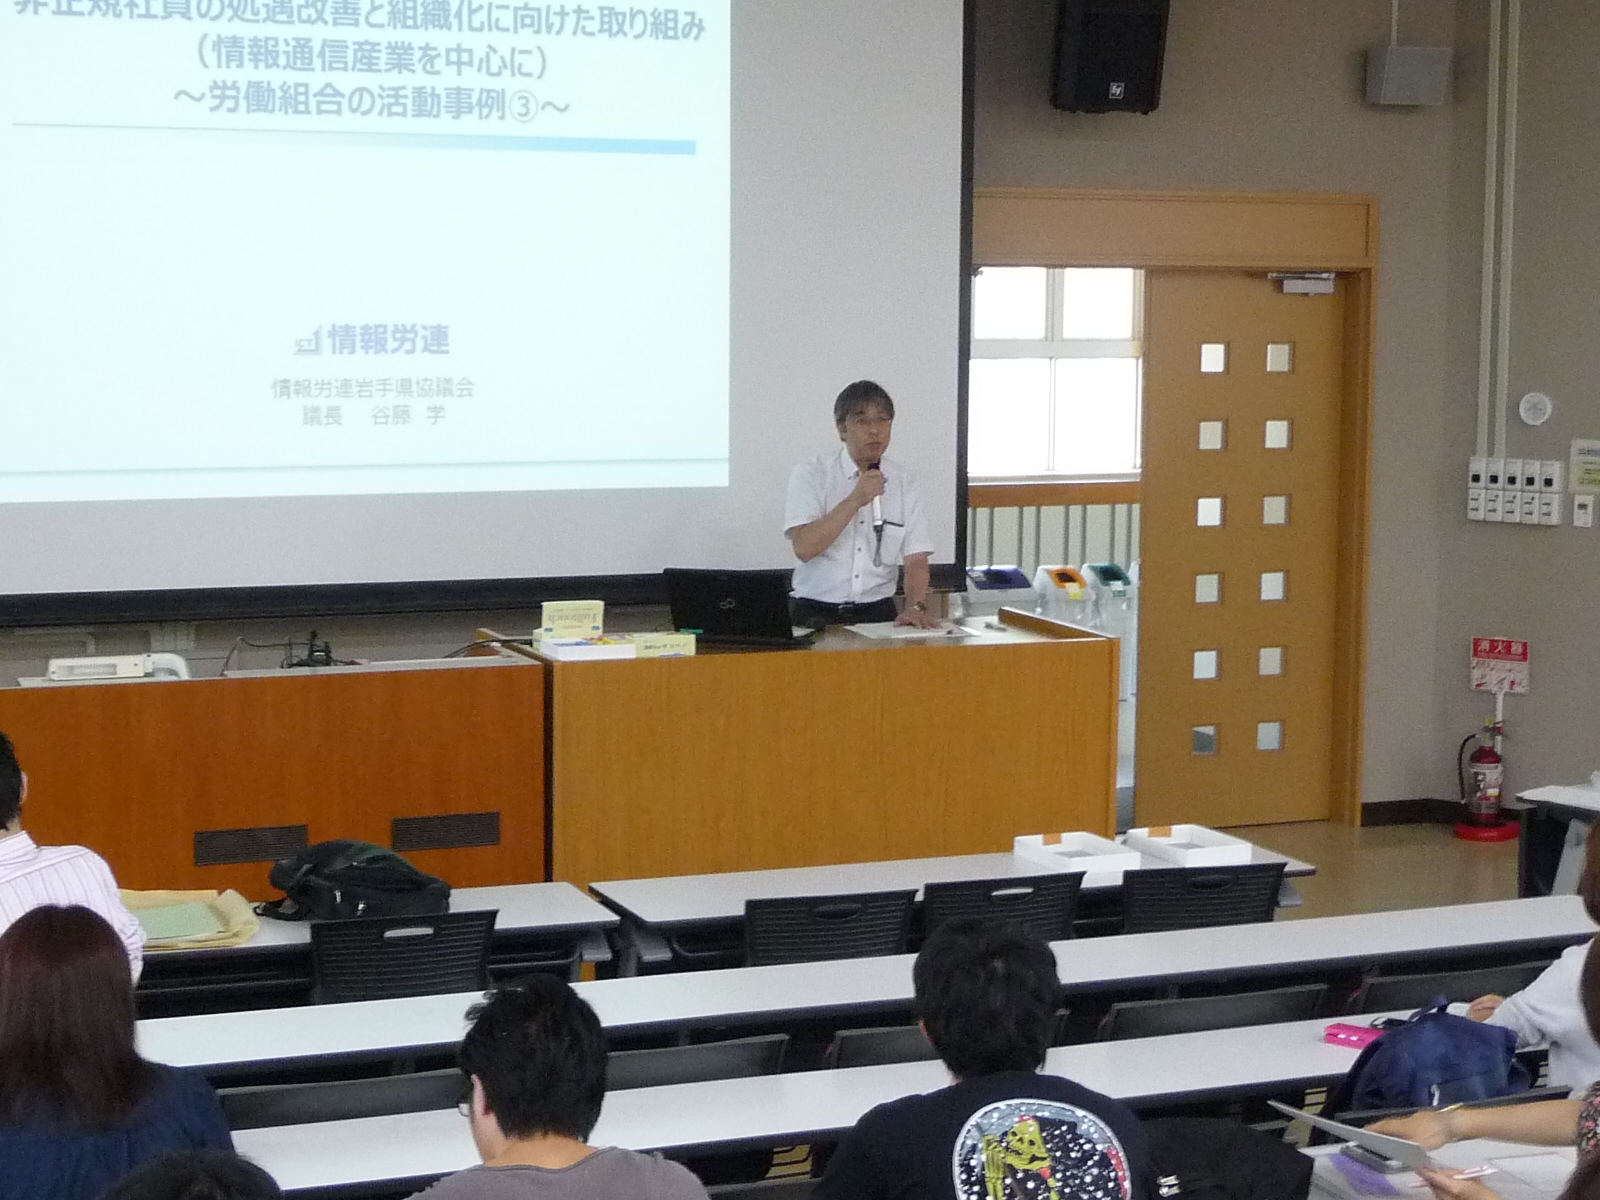 情報労連の「仲間づくり」の活動を紹介する谷藤副会長